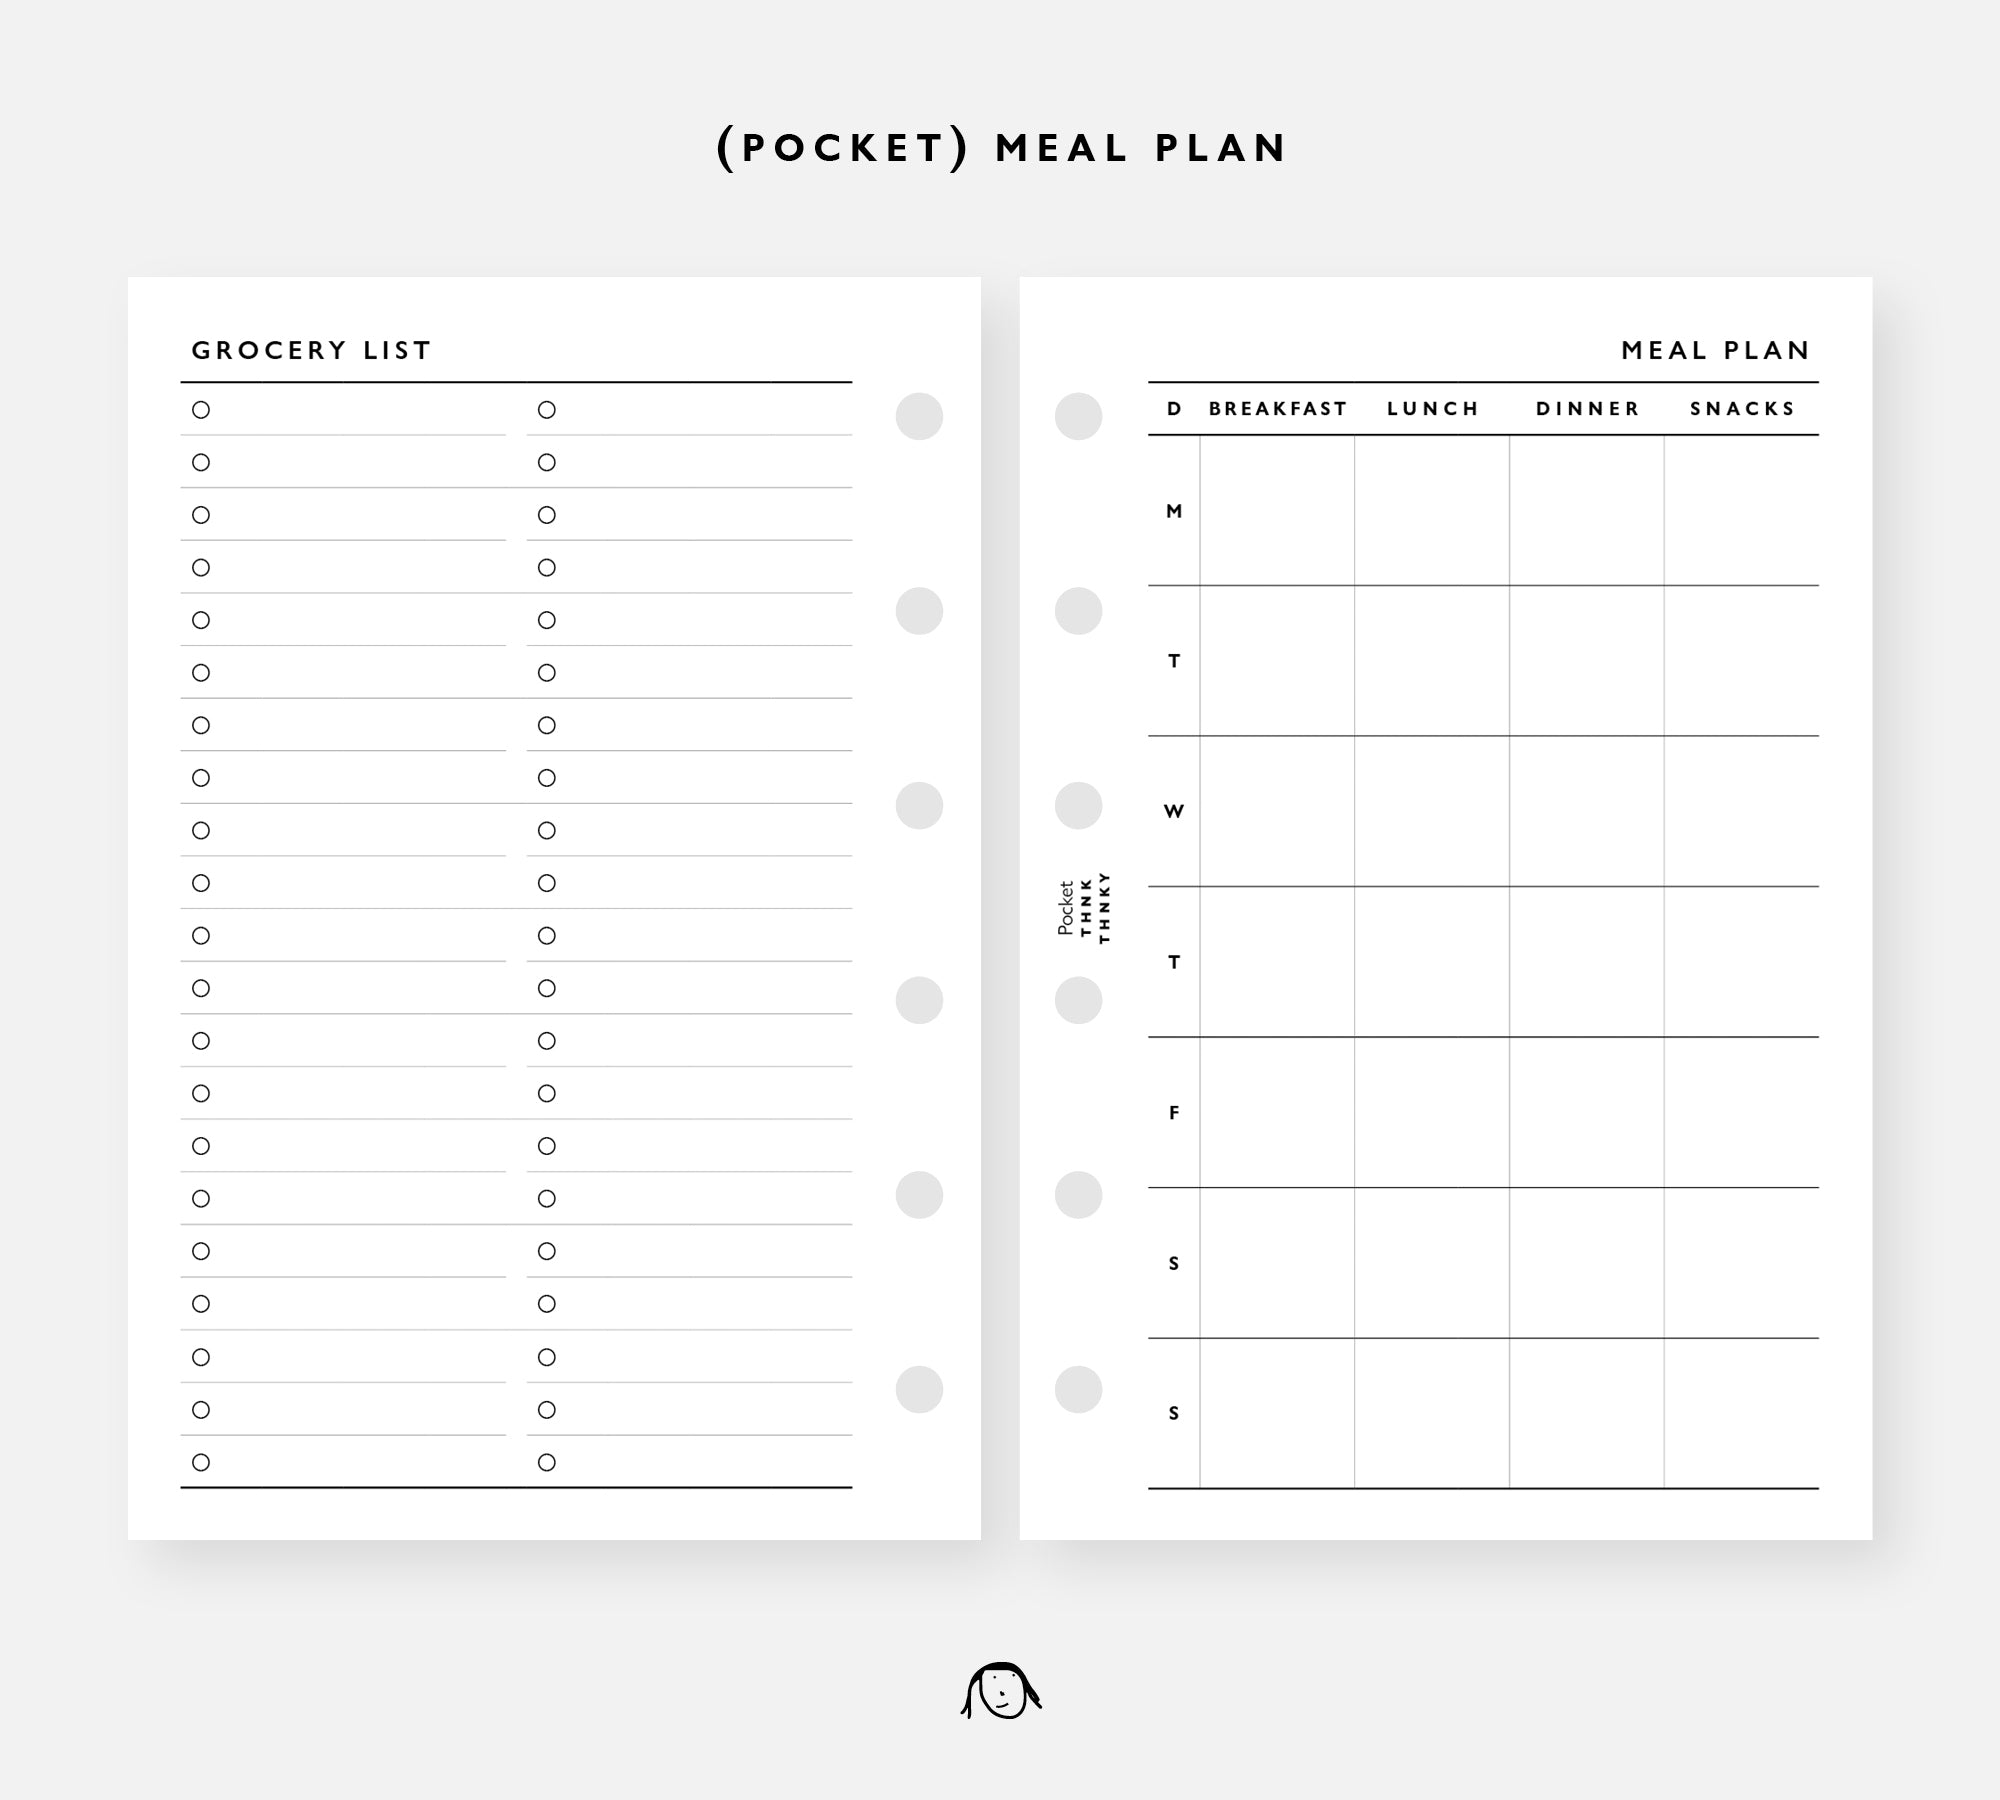 POE1(Pocket)-Meal Plan